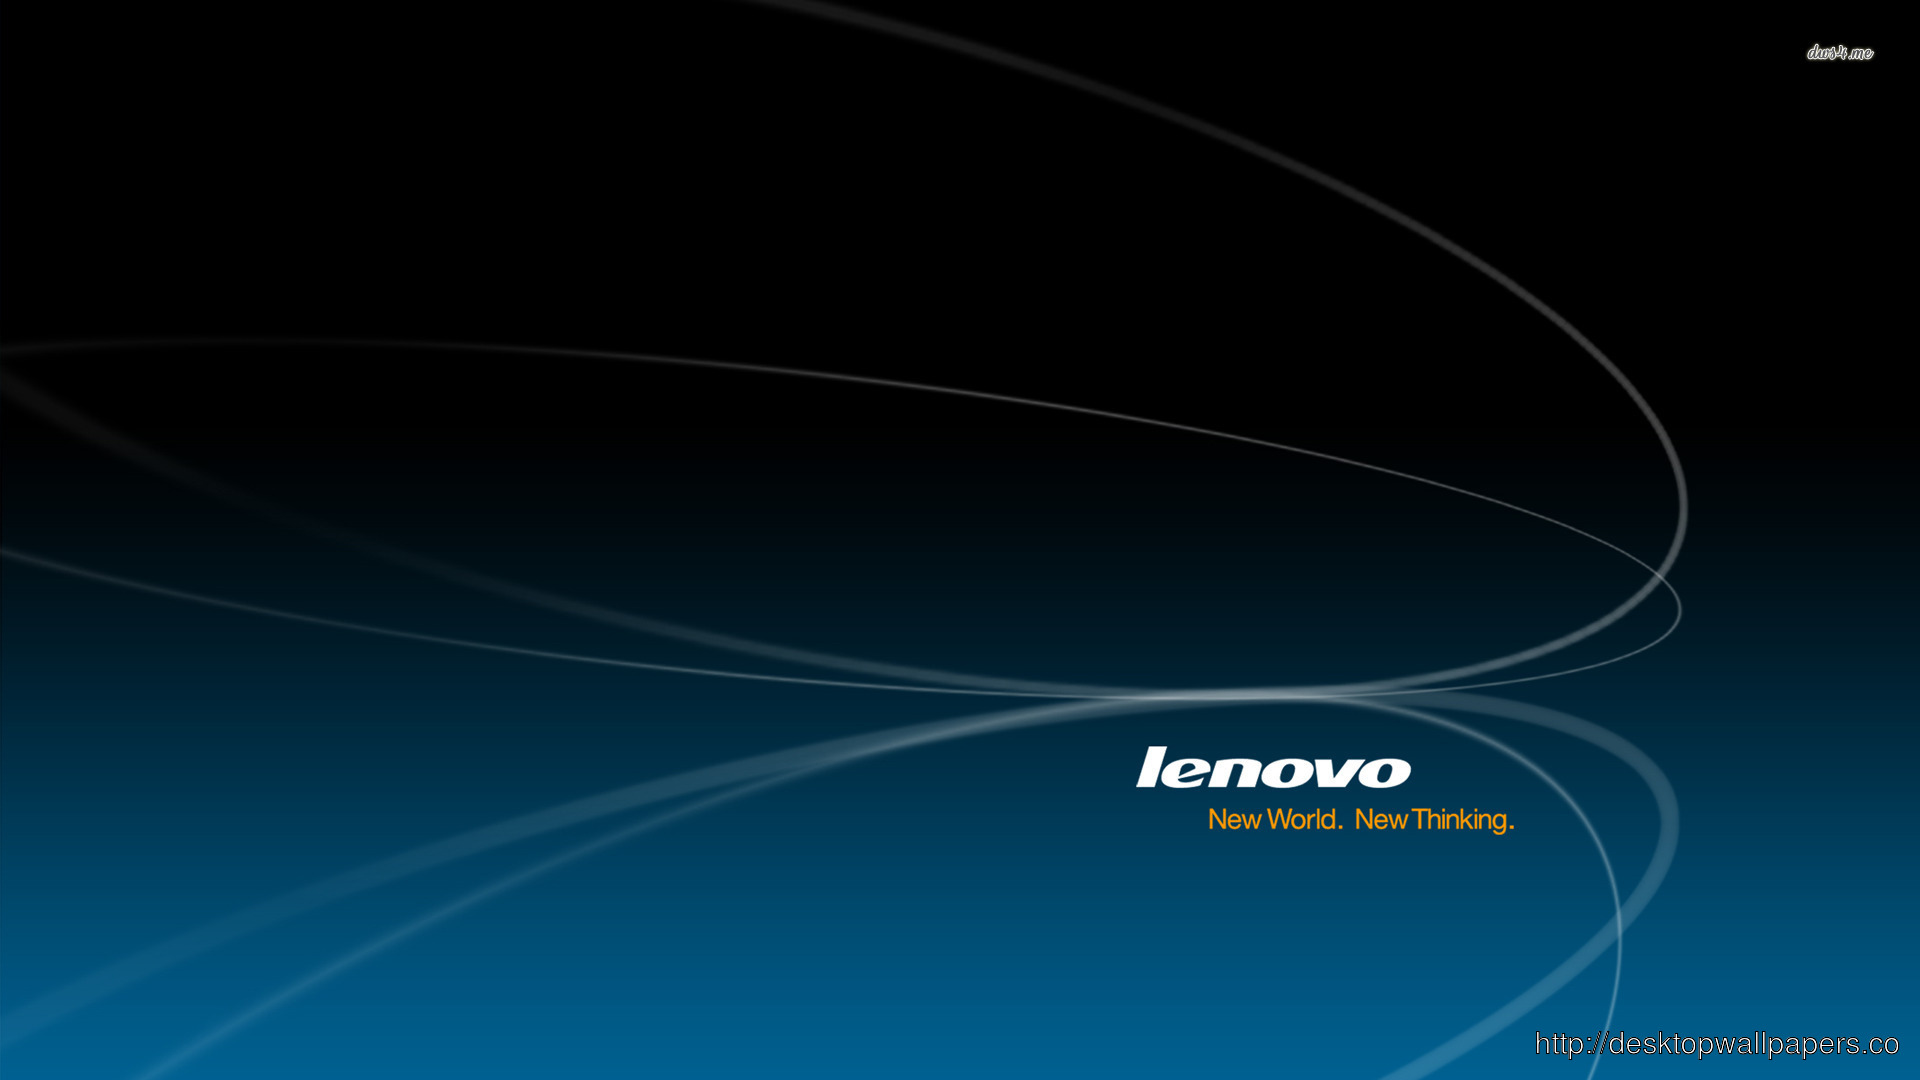 Lenovo Wallpaperdesktop Wallpaper